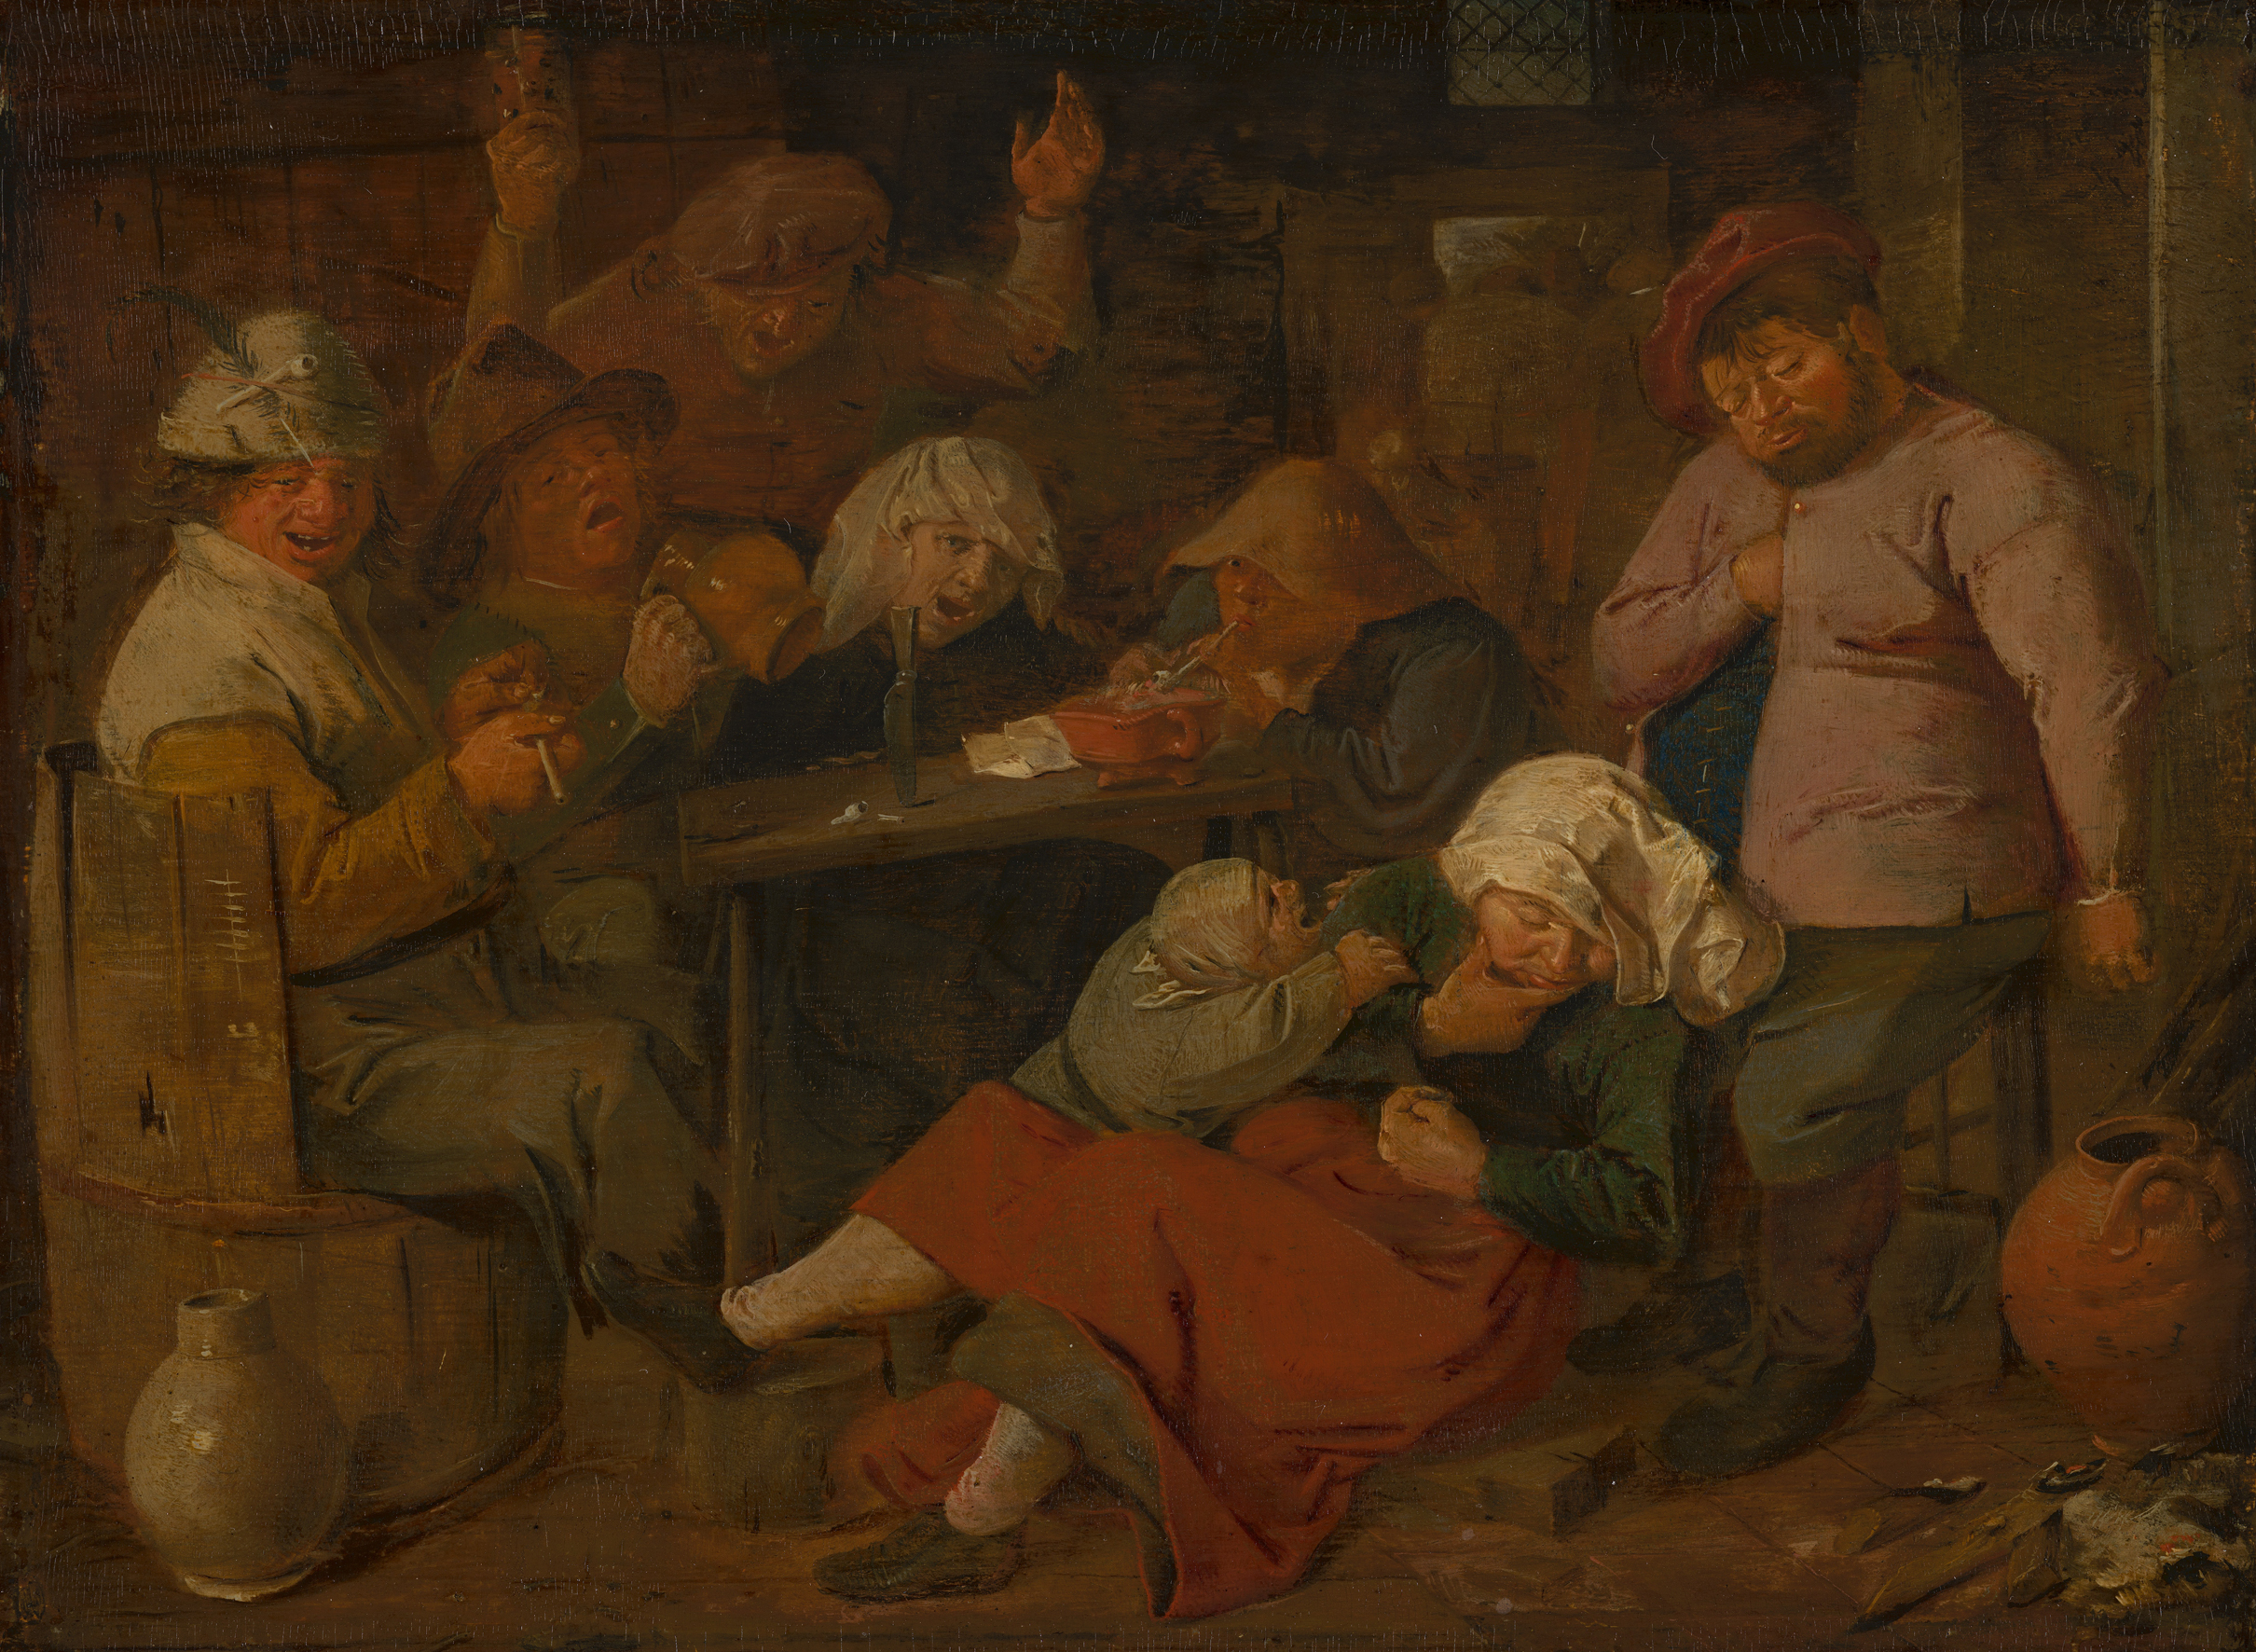  Adriaen Brouwer, Betrunkene Bauern in einem Gasthaus,1625-1626, Öl auf Holz, 20 × 27 cm Den Haag, Mauritshuis, Dauerleihgabe des Rijksmuseum Amsterdam